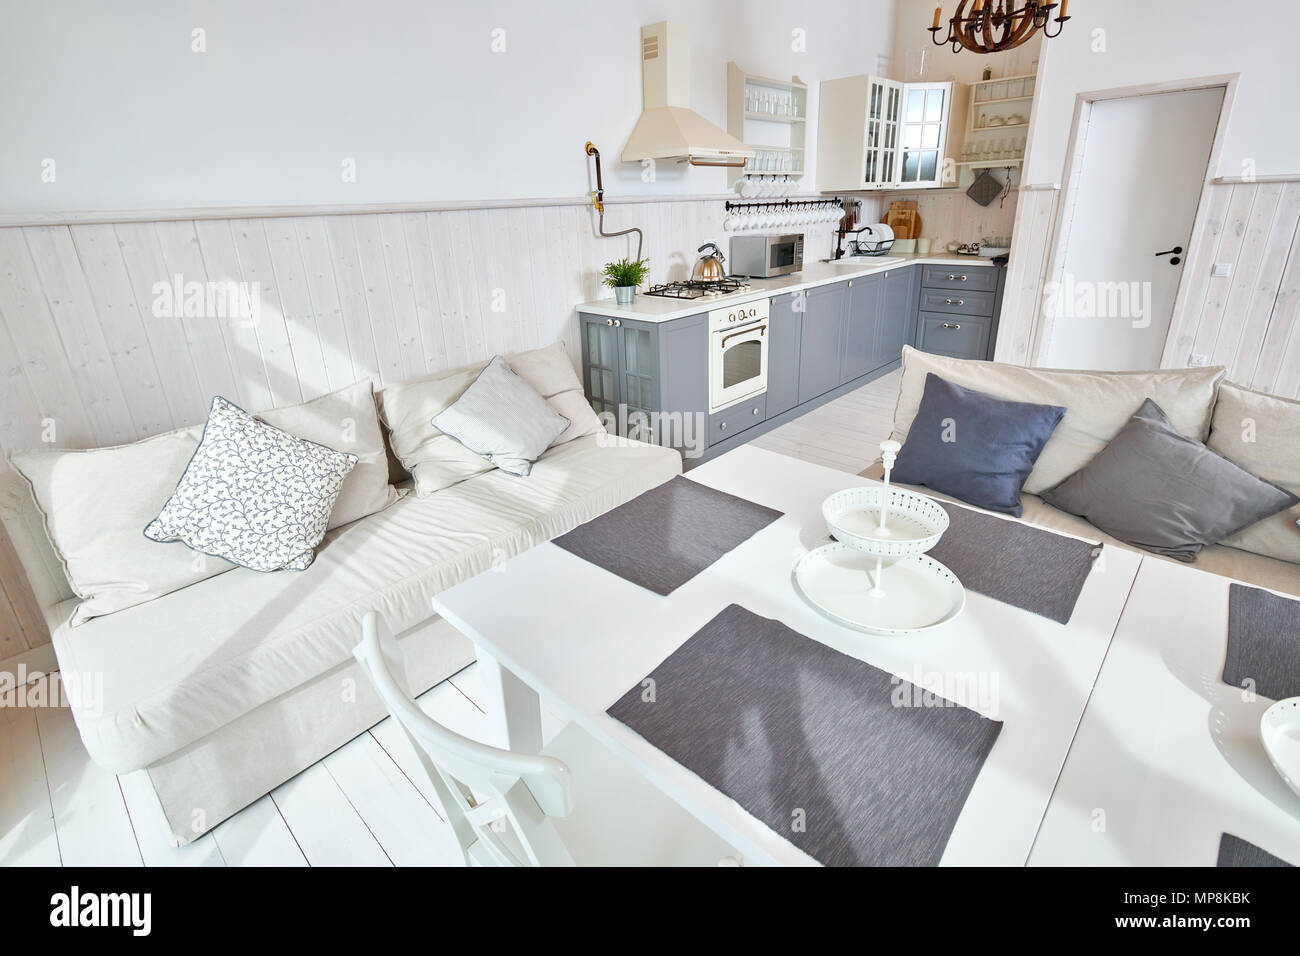 Wide Angle Shot der modernen offenen Wohnzimmer Einrichtung mit weißen Möbeln und grau Küche Zähler in minimalistischen skandinavischen Design durch Sonnenlicht beleuchtet Stockfoto